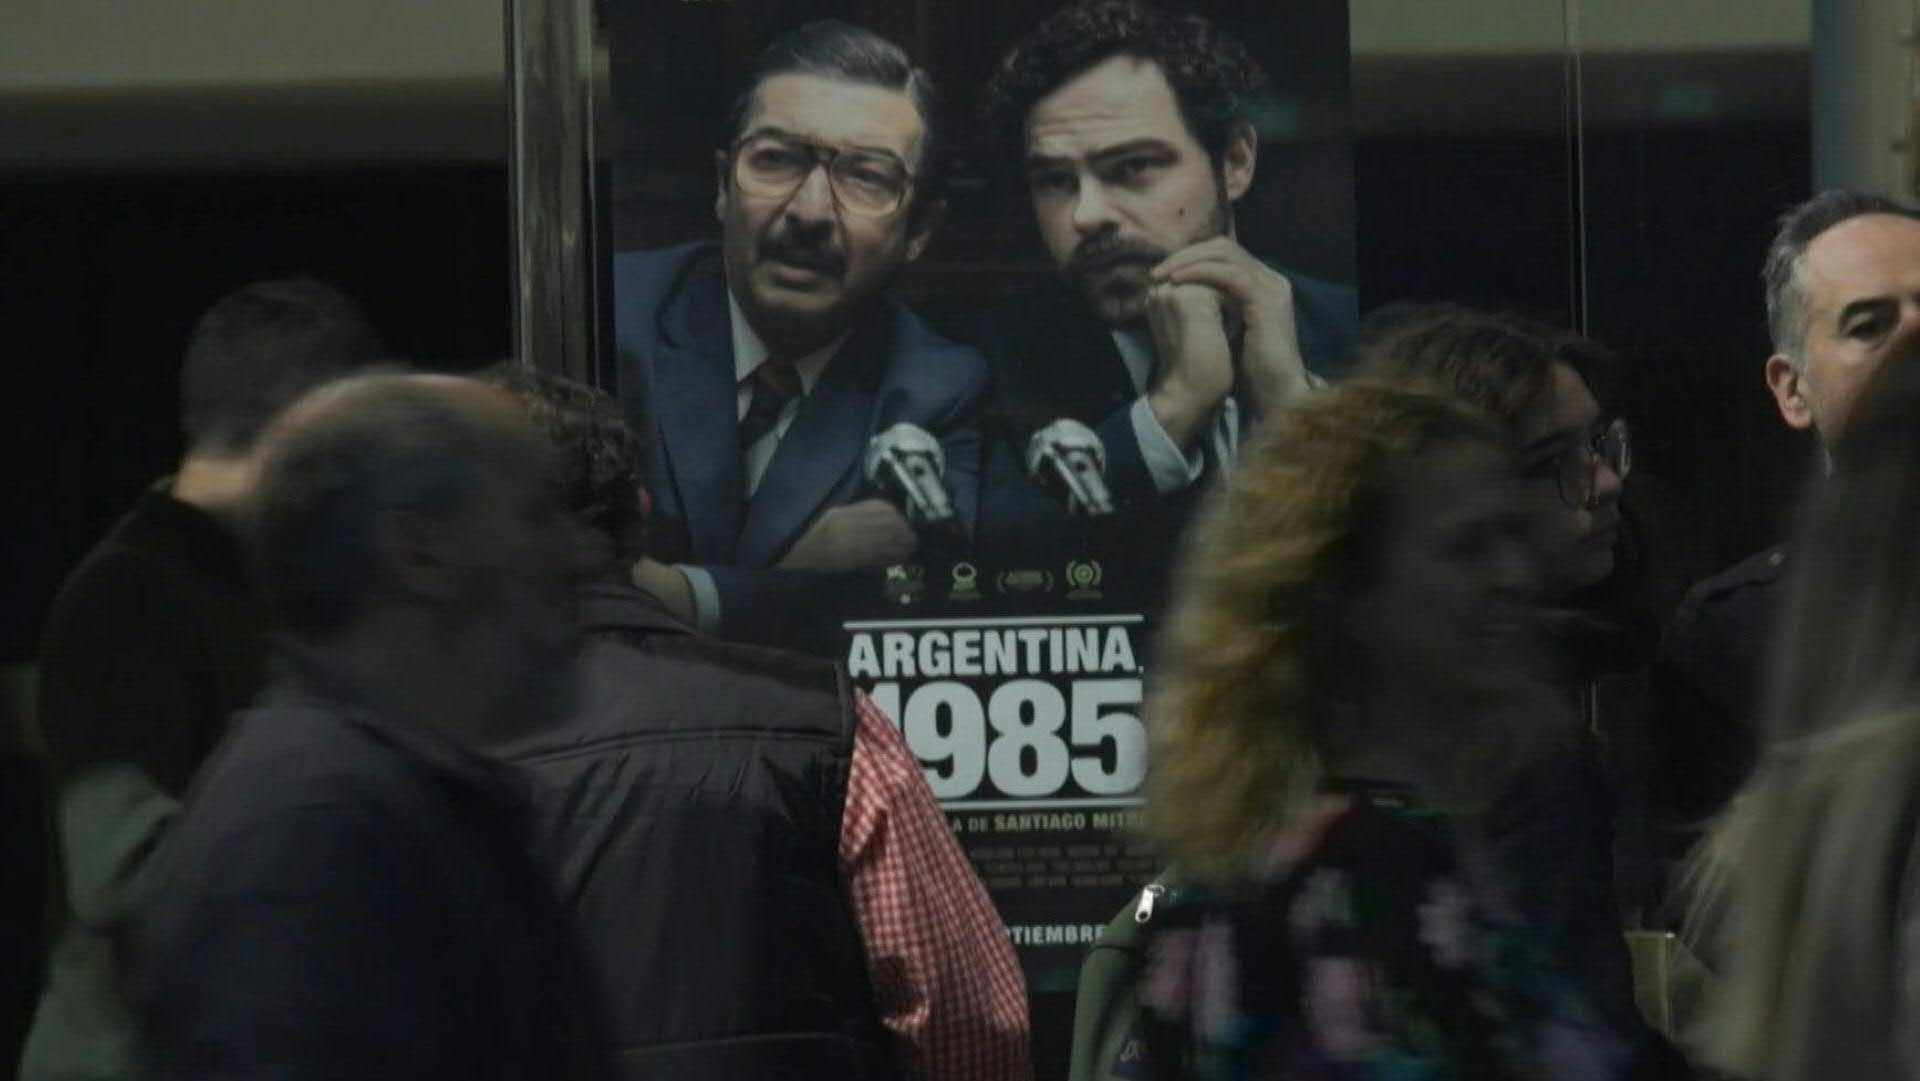 El filme 'Argentina, 1985' sobre el histórico juicio que condenó a los comandantes de la dictadura (1976-1983), va camino de romper récords de taquilla